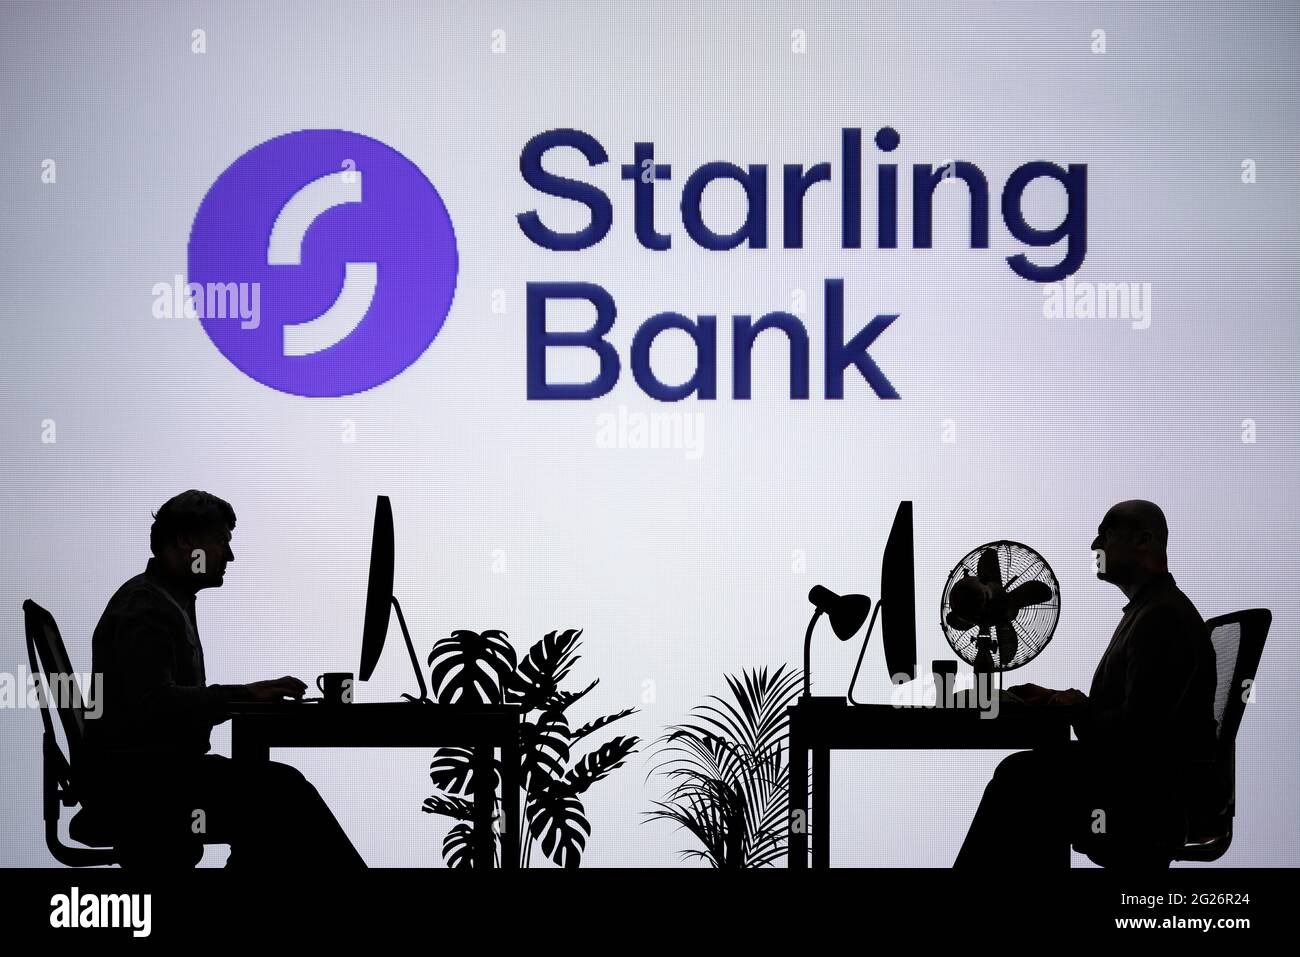 Das Starling Bank-Logo ist auf einem LED-Bildschirm im Hintergrund zu sehen, während zwei silhouettierte Menschen in einer Büroumgebung arbeiten (nur zur redaktionellen Verwendung) Stockfoto